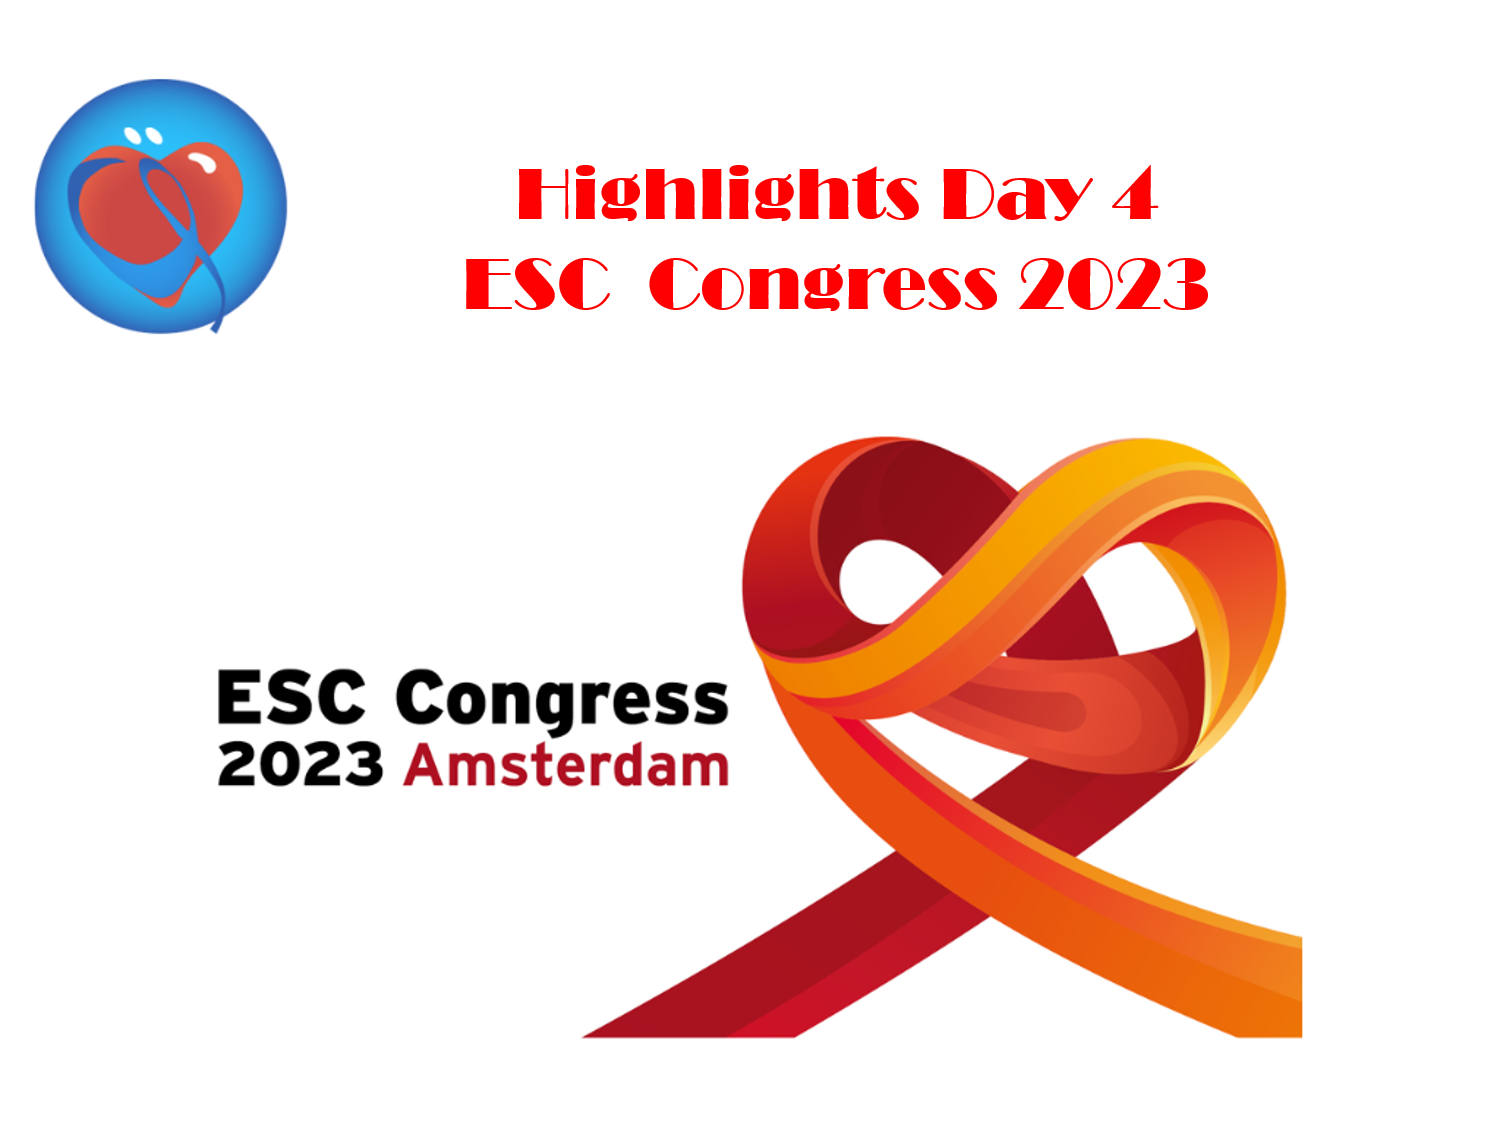 Les highlights du Congrès Européen de Cardiologie , ESC 2023, 4ème Jour